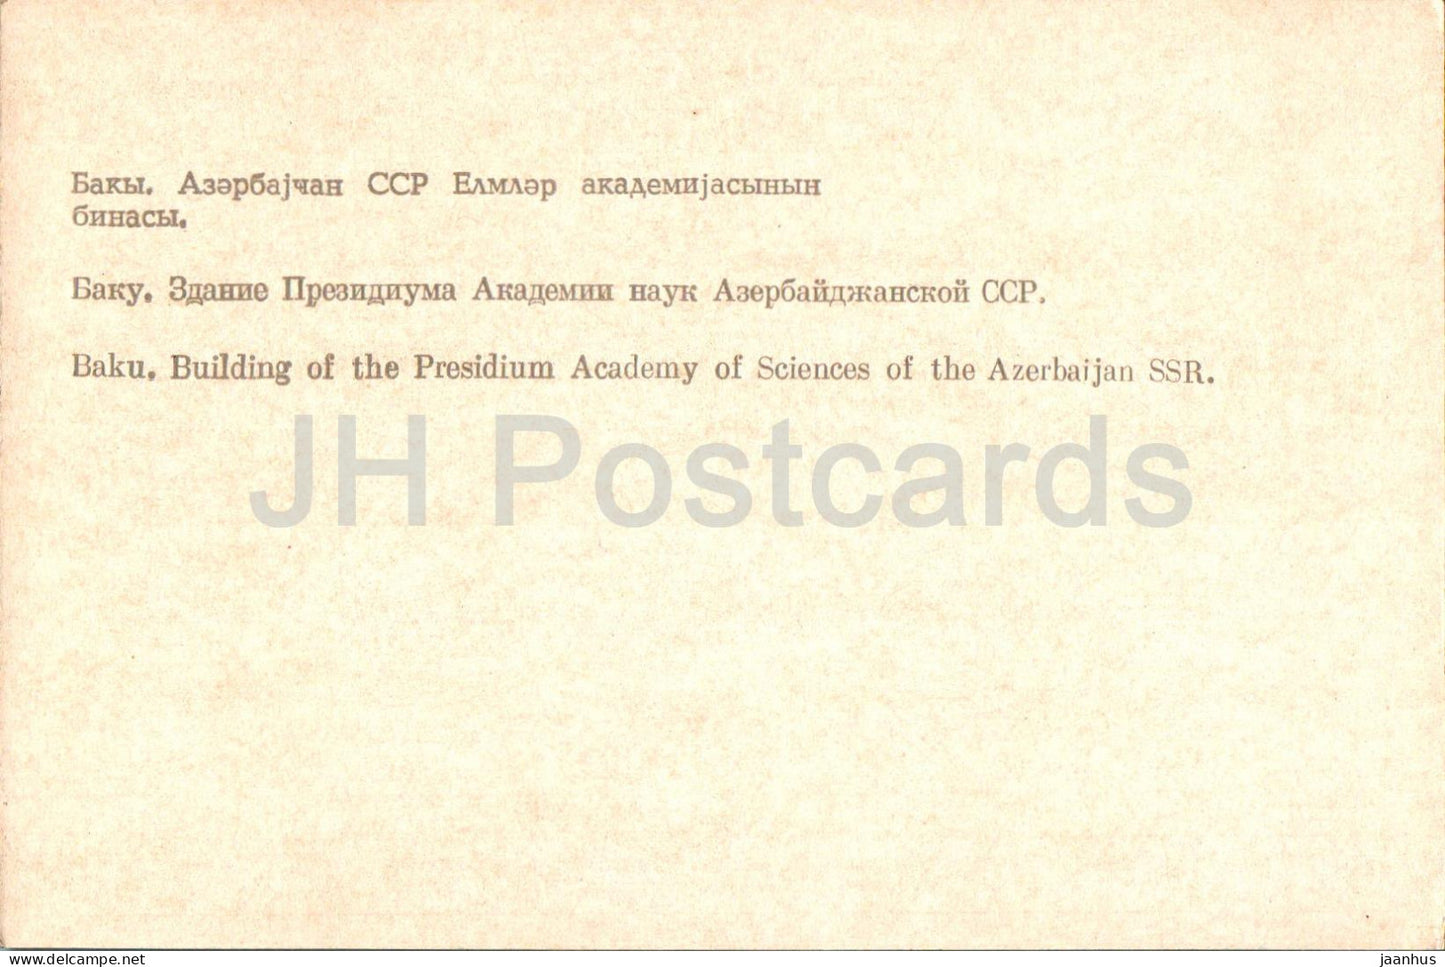 Bakou - Bâtiment du Présidium de l'Académie des sciences de la RSS d'Azerbaïdjan - 1972 - URSS d'Azerbaïdjan - inutilisé